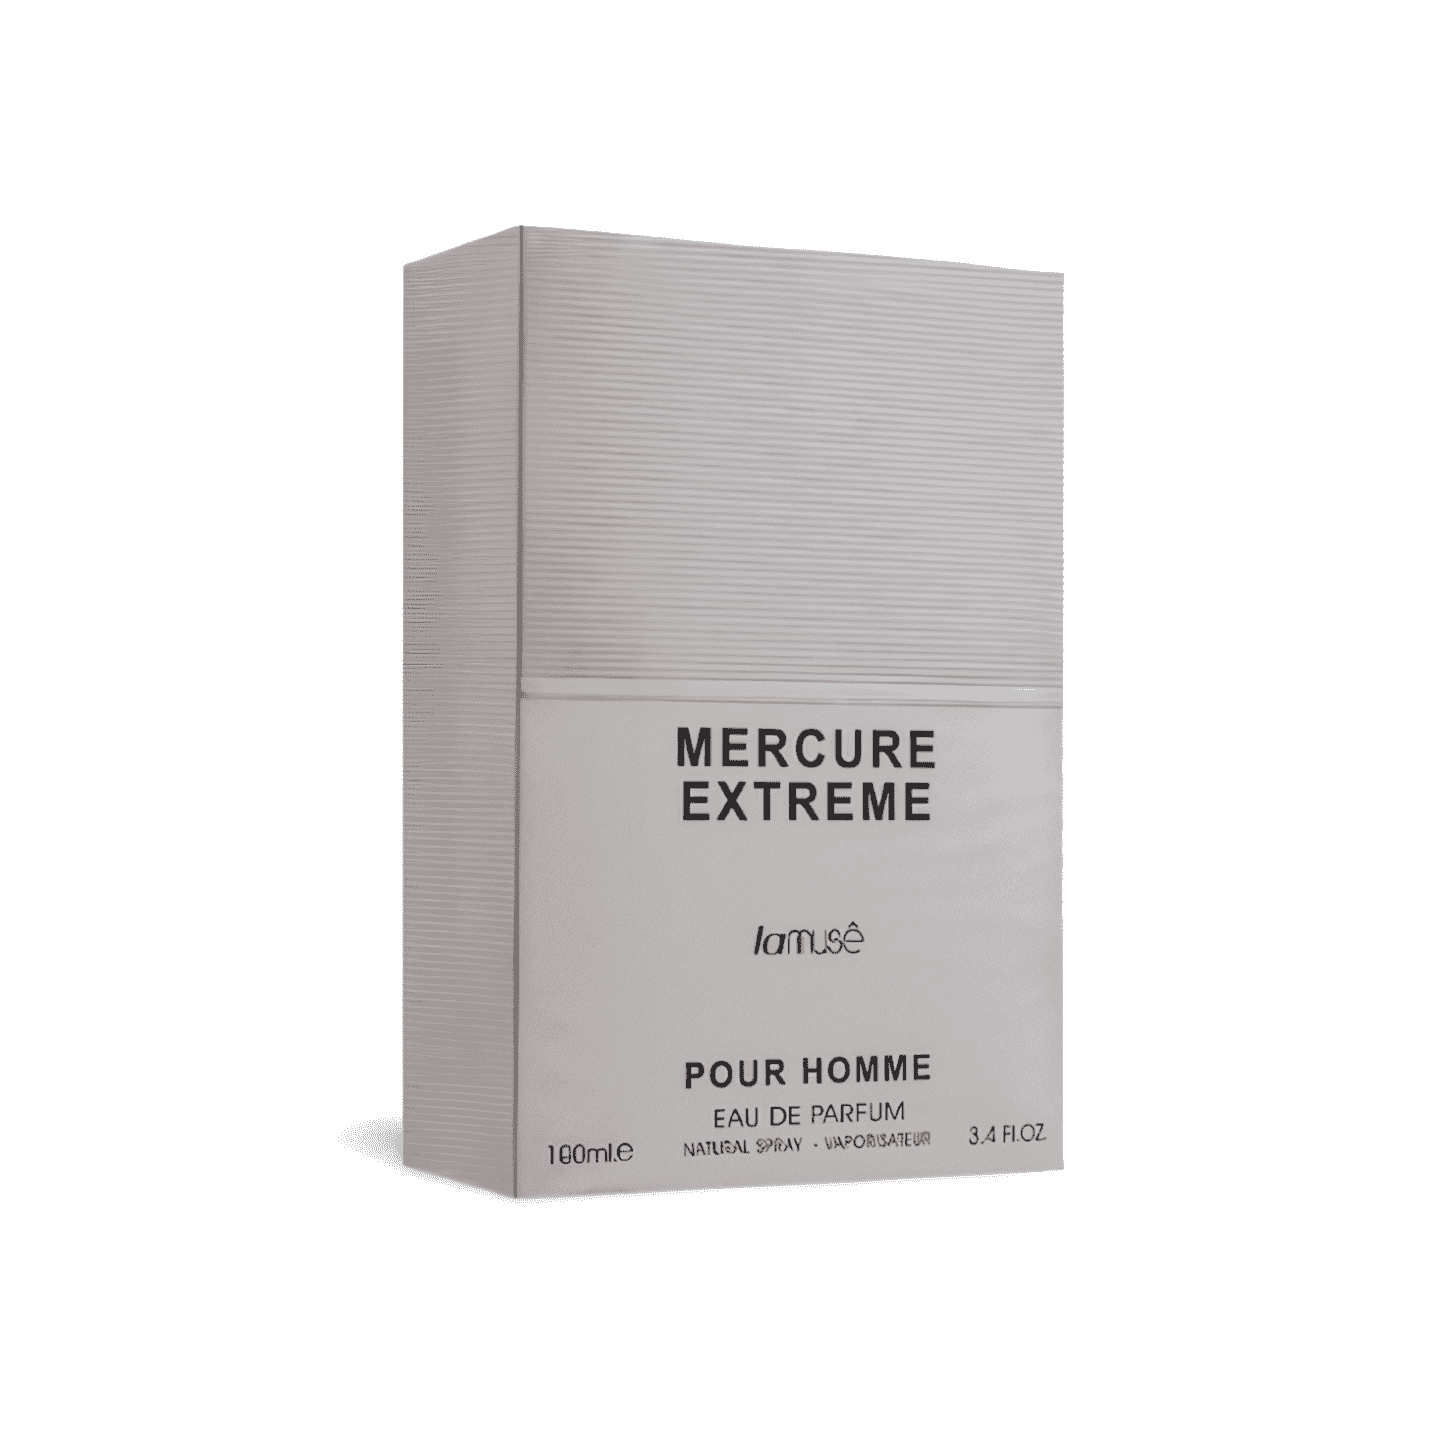 Mercure Extreme Lamuse Pour Homme Eau De Parfum - Shop Online